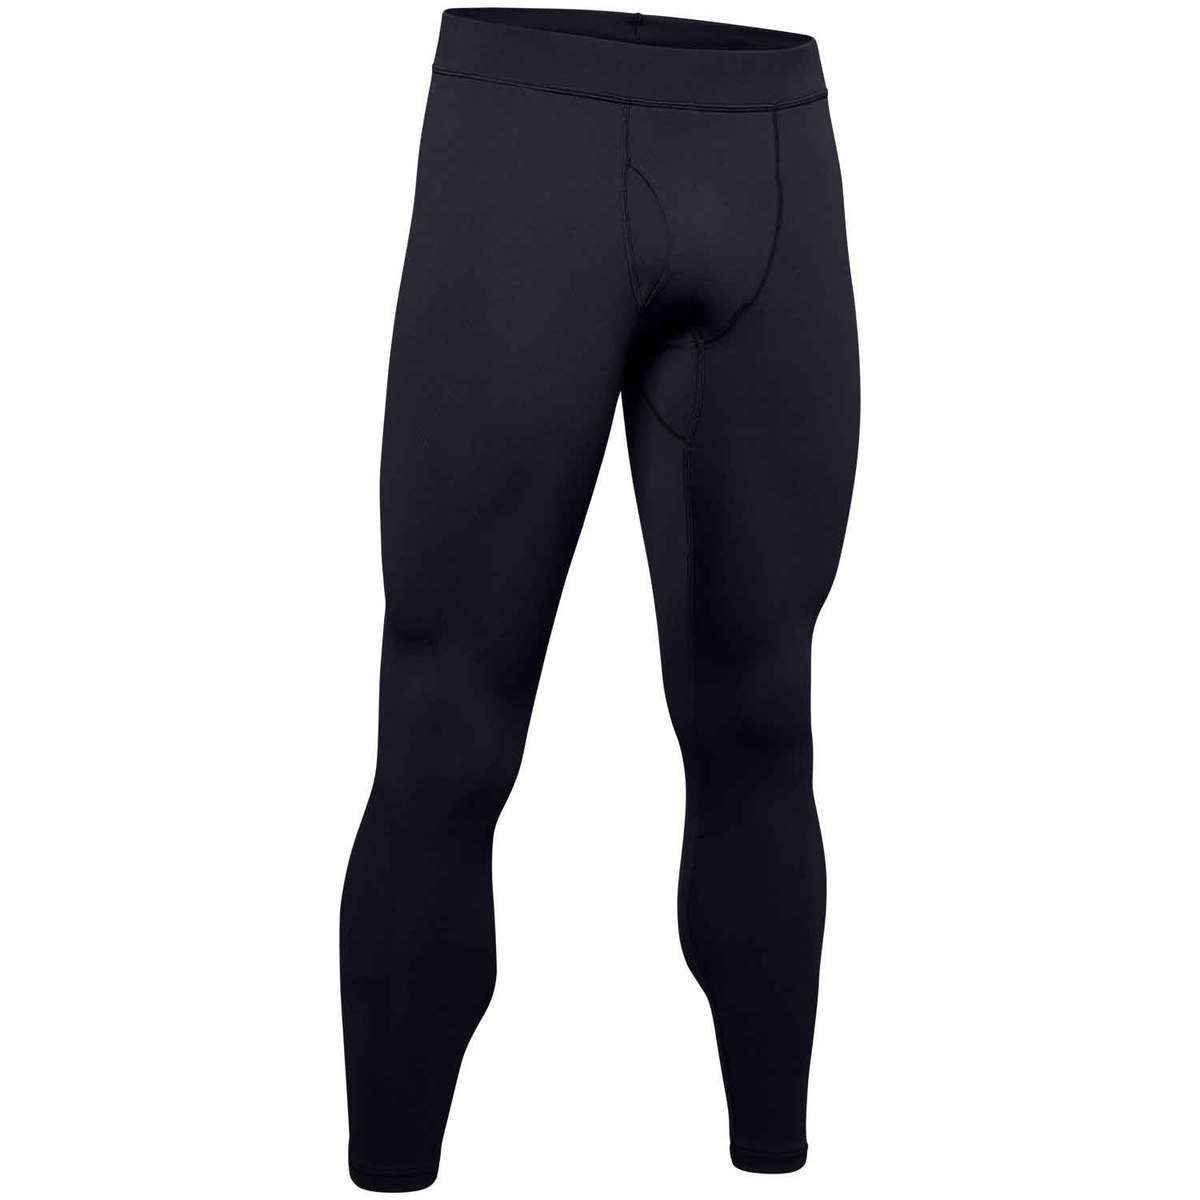 https://www.sportsmans.com/medias/under-armour-mens-coldgear-base-20-leggings-black-s-1521582-1.jpg?context=bWFzdGVyfGltYWdlc3wyNjE0NXxpbWFnZS9qcGVnfGltYWdlcy9oODEvaGY1Lzk3MzE5MTU3NzYwMzAuanBnfDA1NTgzZDExNmVlNzQ2ZGEyYjkwZmNlN2YxMWZlNjlhNDQwYTA1N2MwZDMyYjRjNzhiZGE5YTVkOTRkYWNlOWI